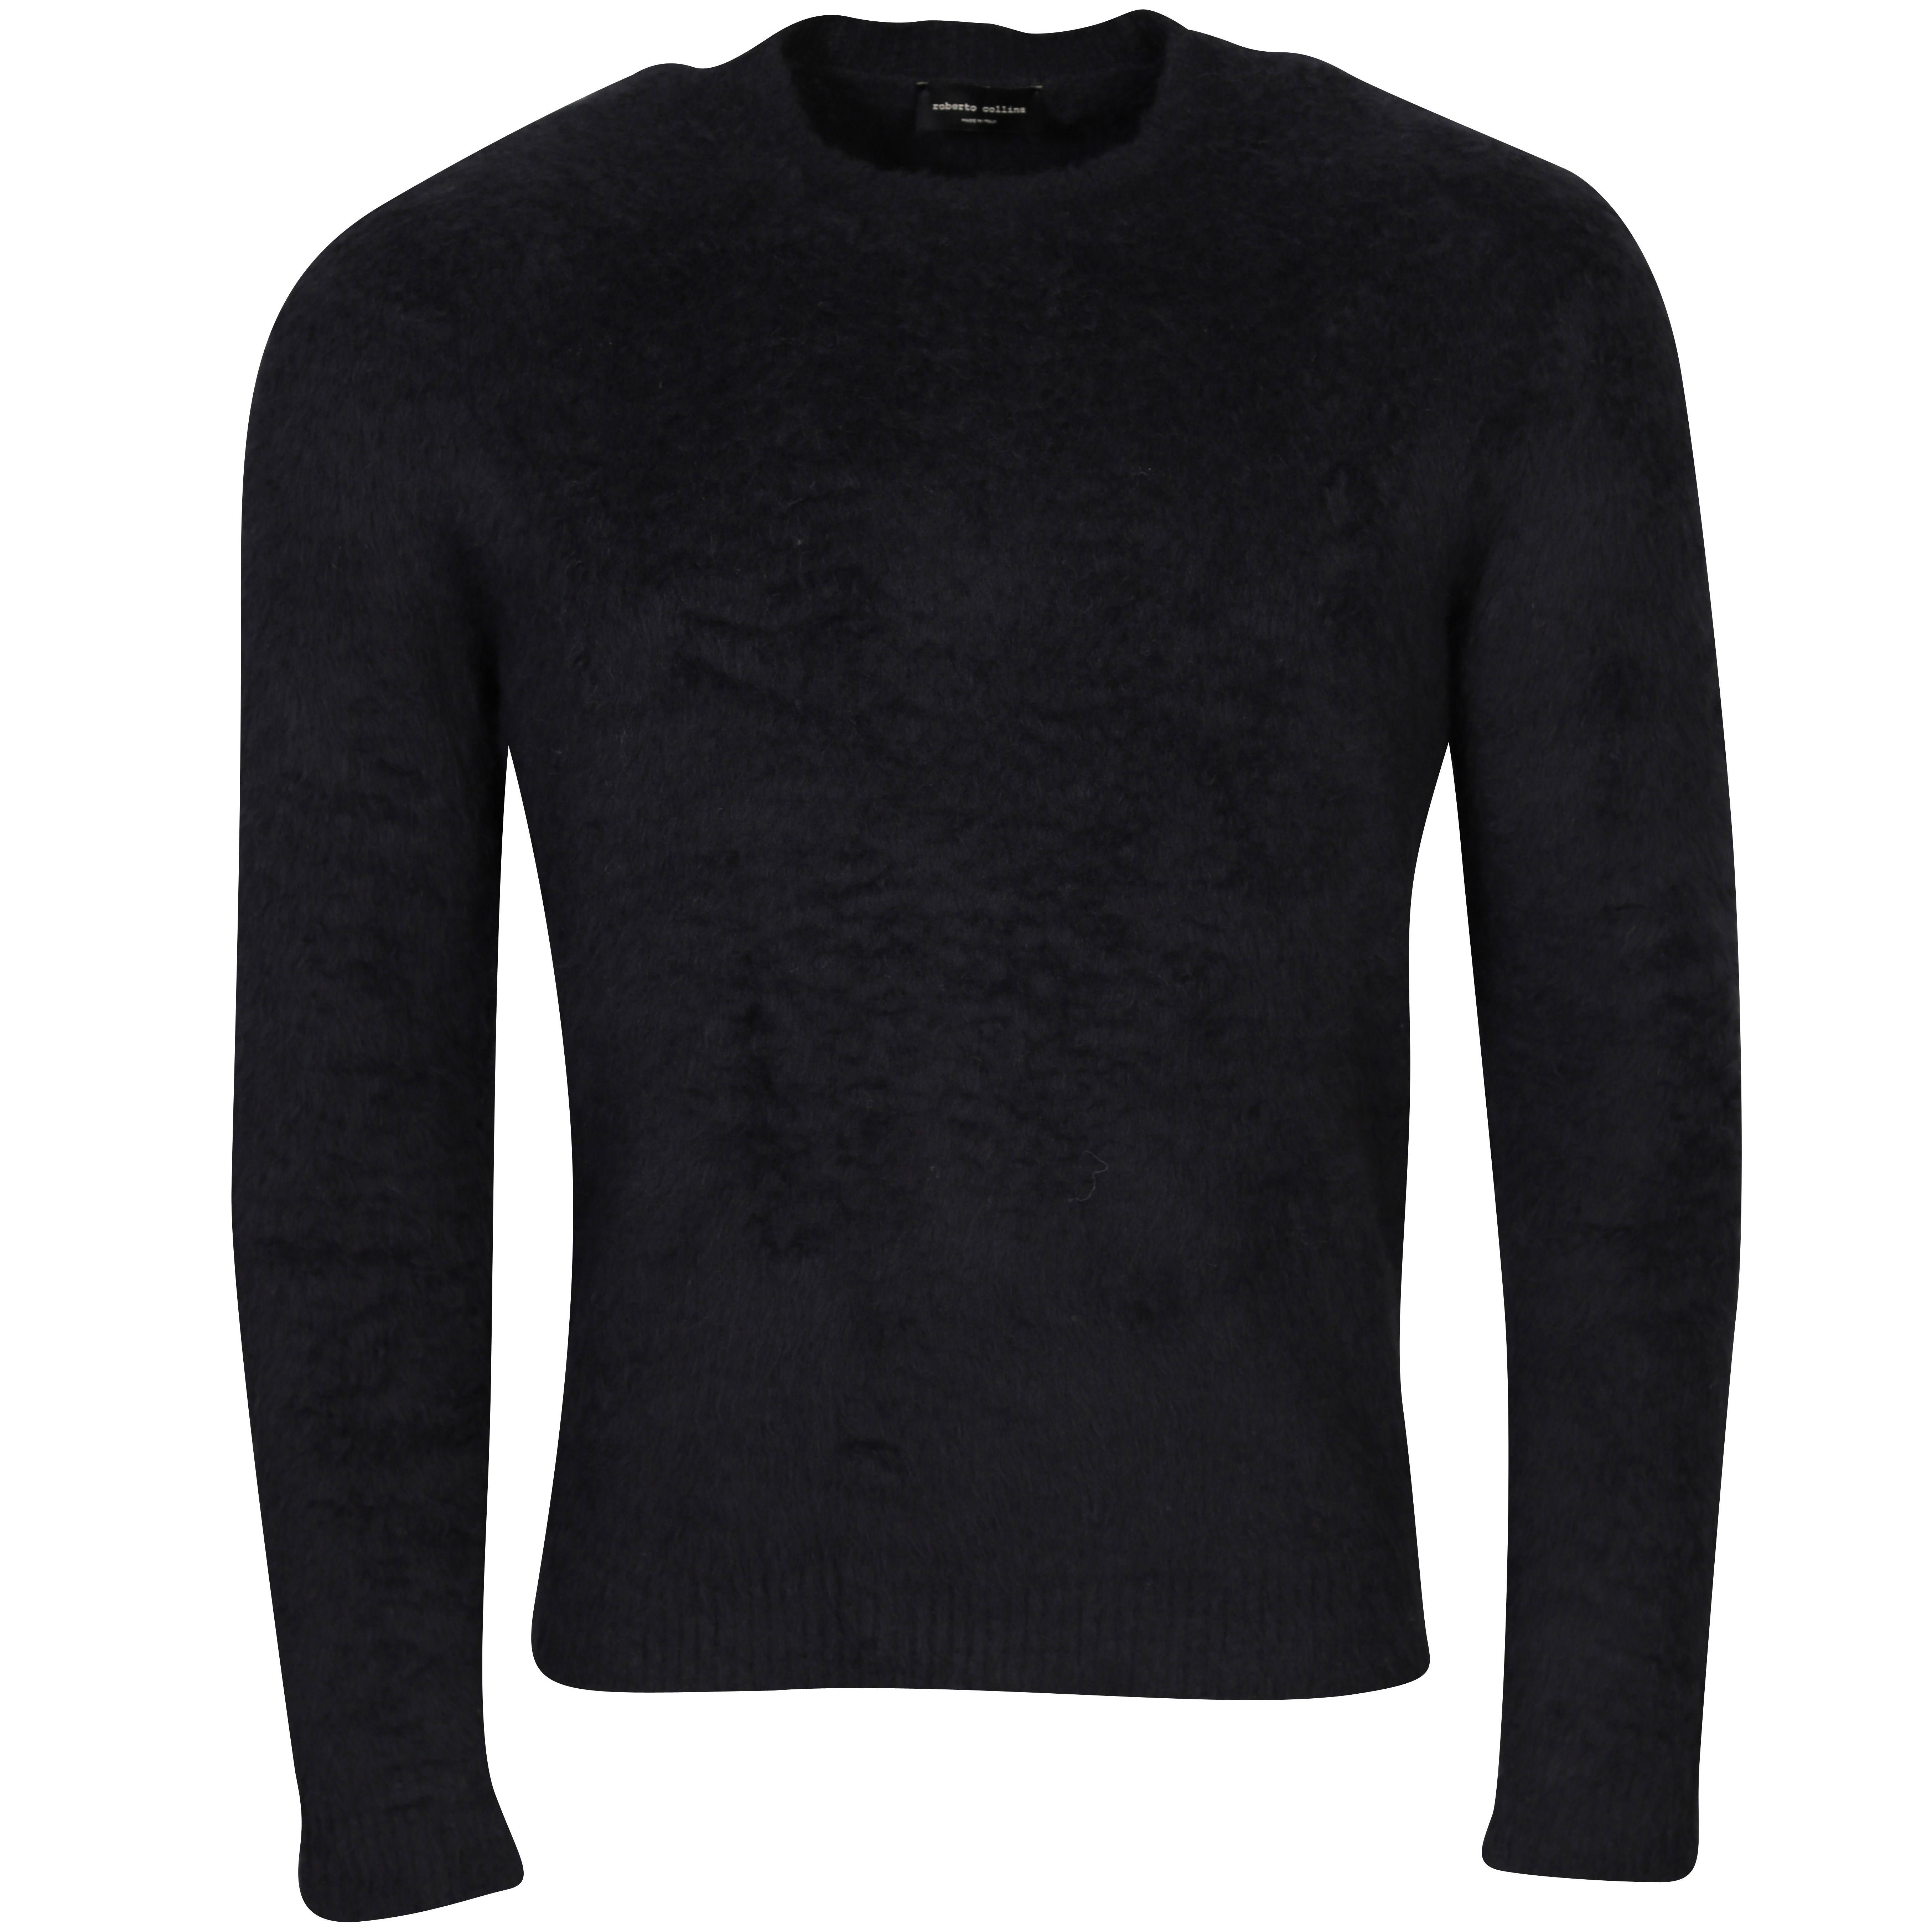 Roberto Collina Cotton Fluffy Knit Pullover in Black 48